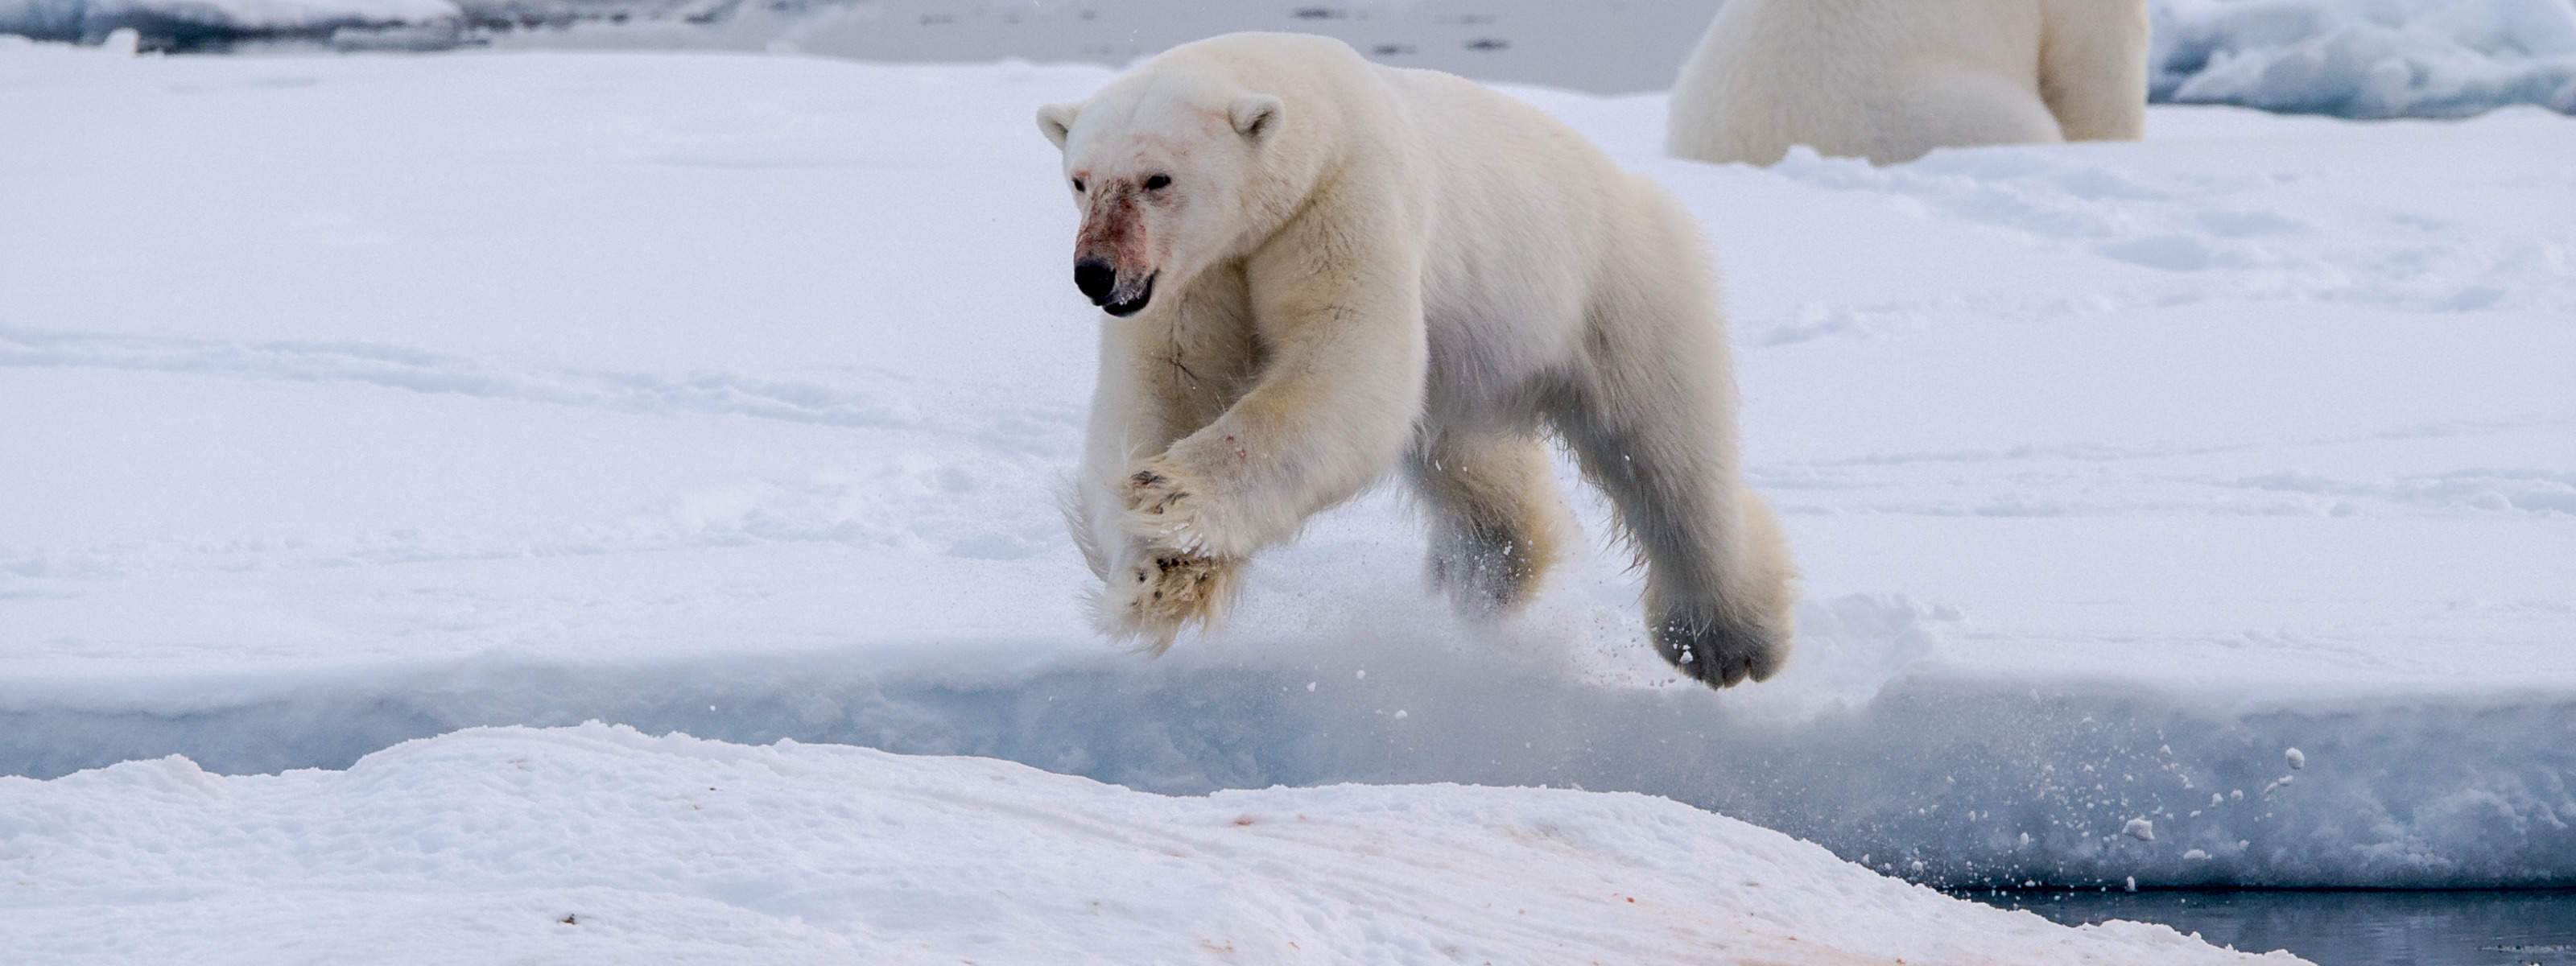 Белый медведь бег. Белый медведь бежит. Белыймедведь бежжжжит. Полярный медведь бежит. Белый медведь бегает.